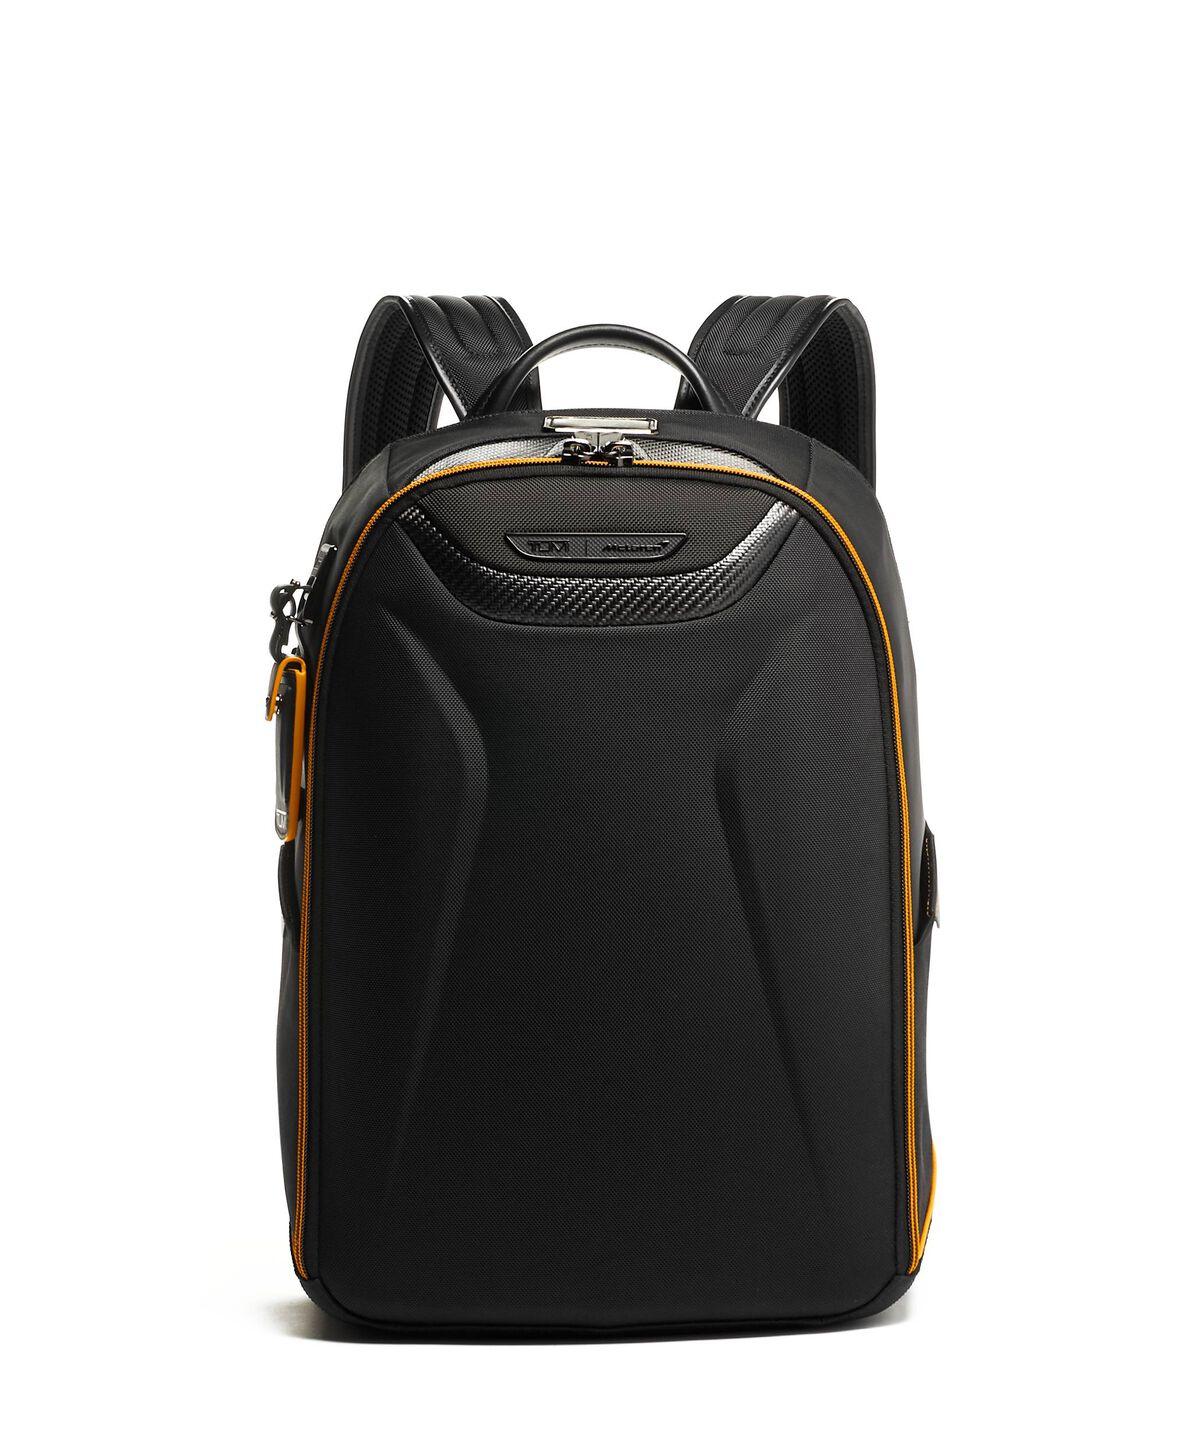 I Mclaren Velocity Backpack - Voyage Luggage